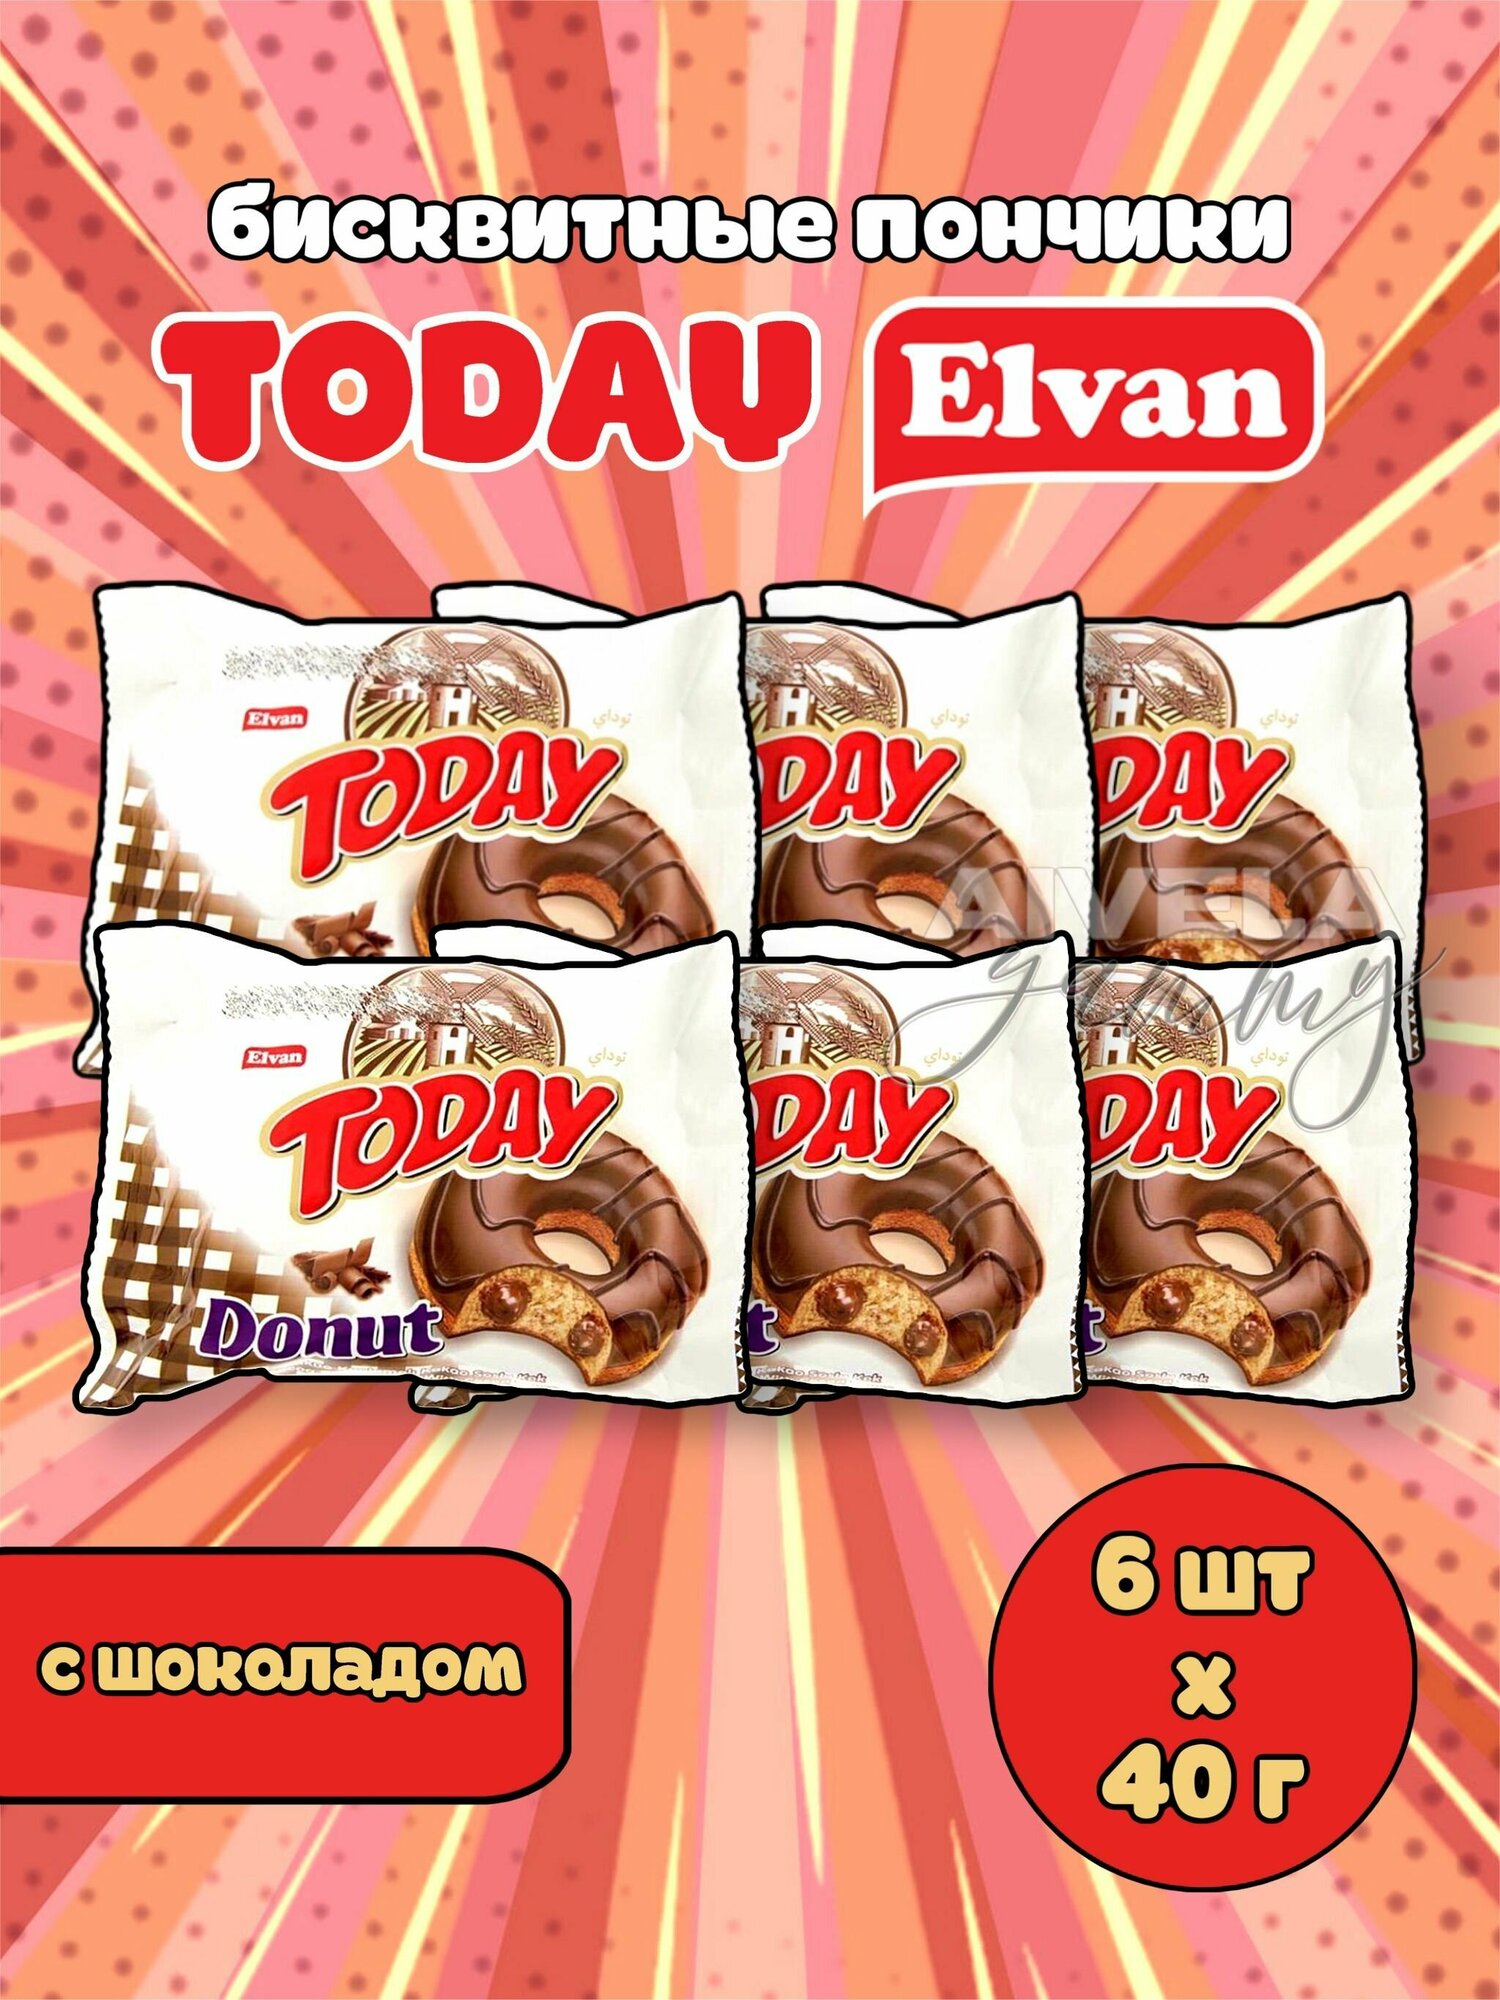 Elvan Today Donut Chocolate/ Тудэй пончик шоколад/ Кекс в глазури с шоколадной начинкой кремом 6 шт